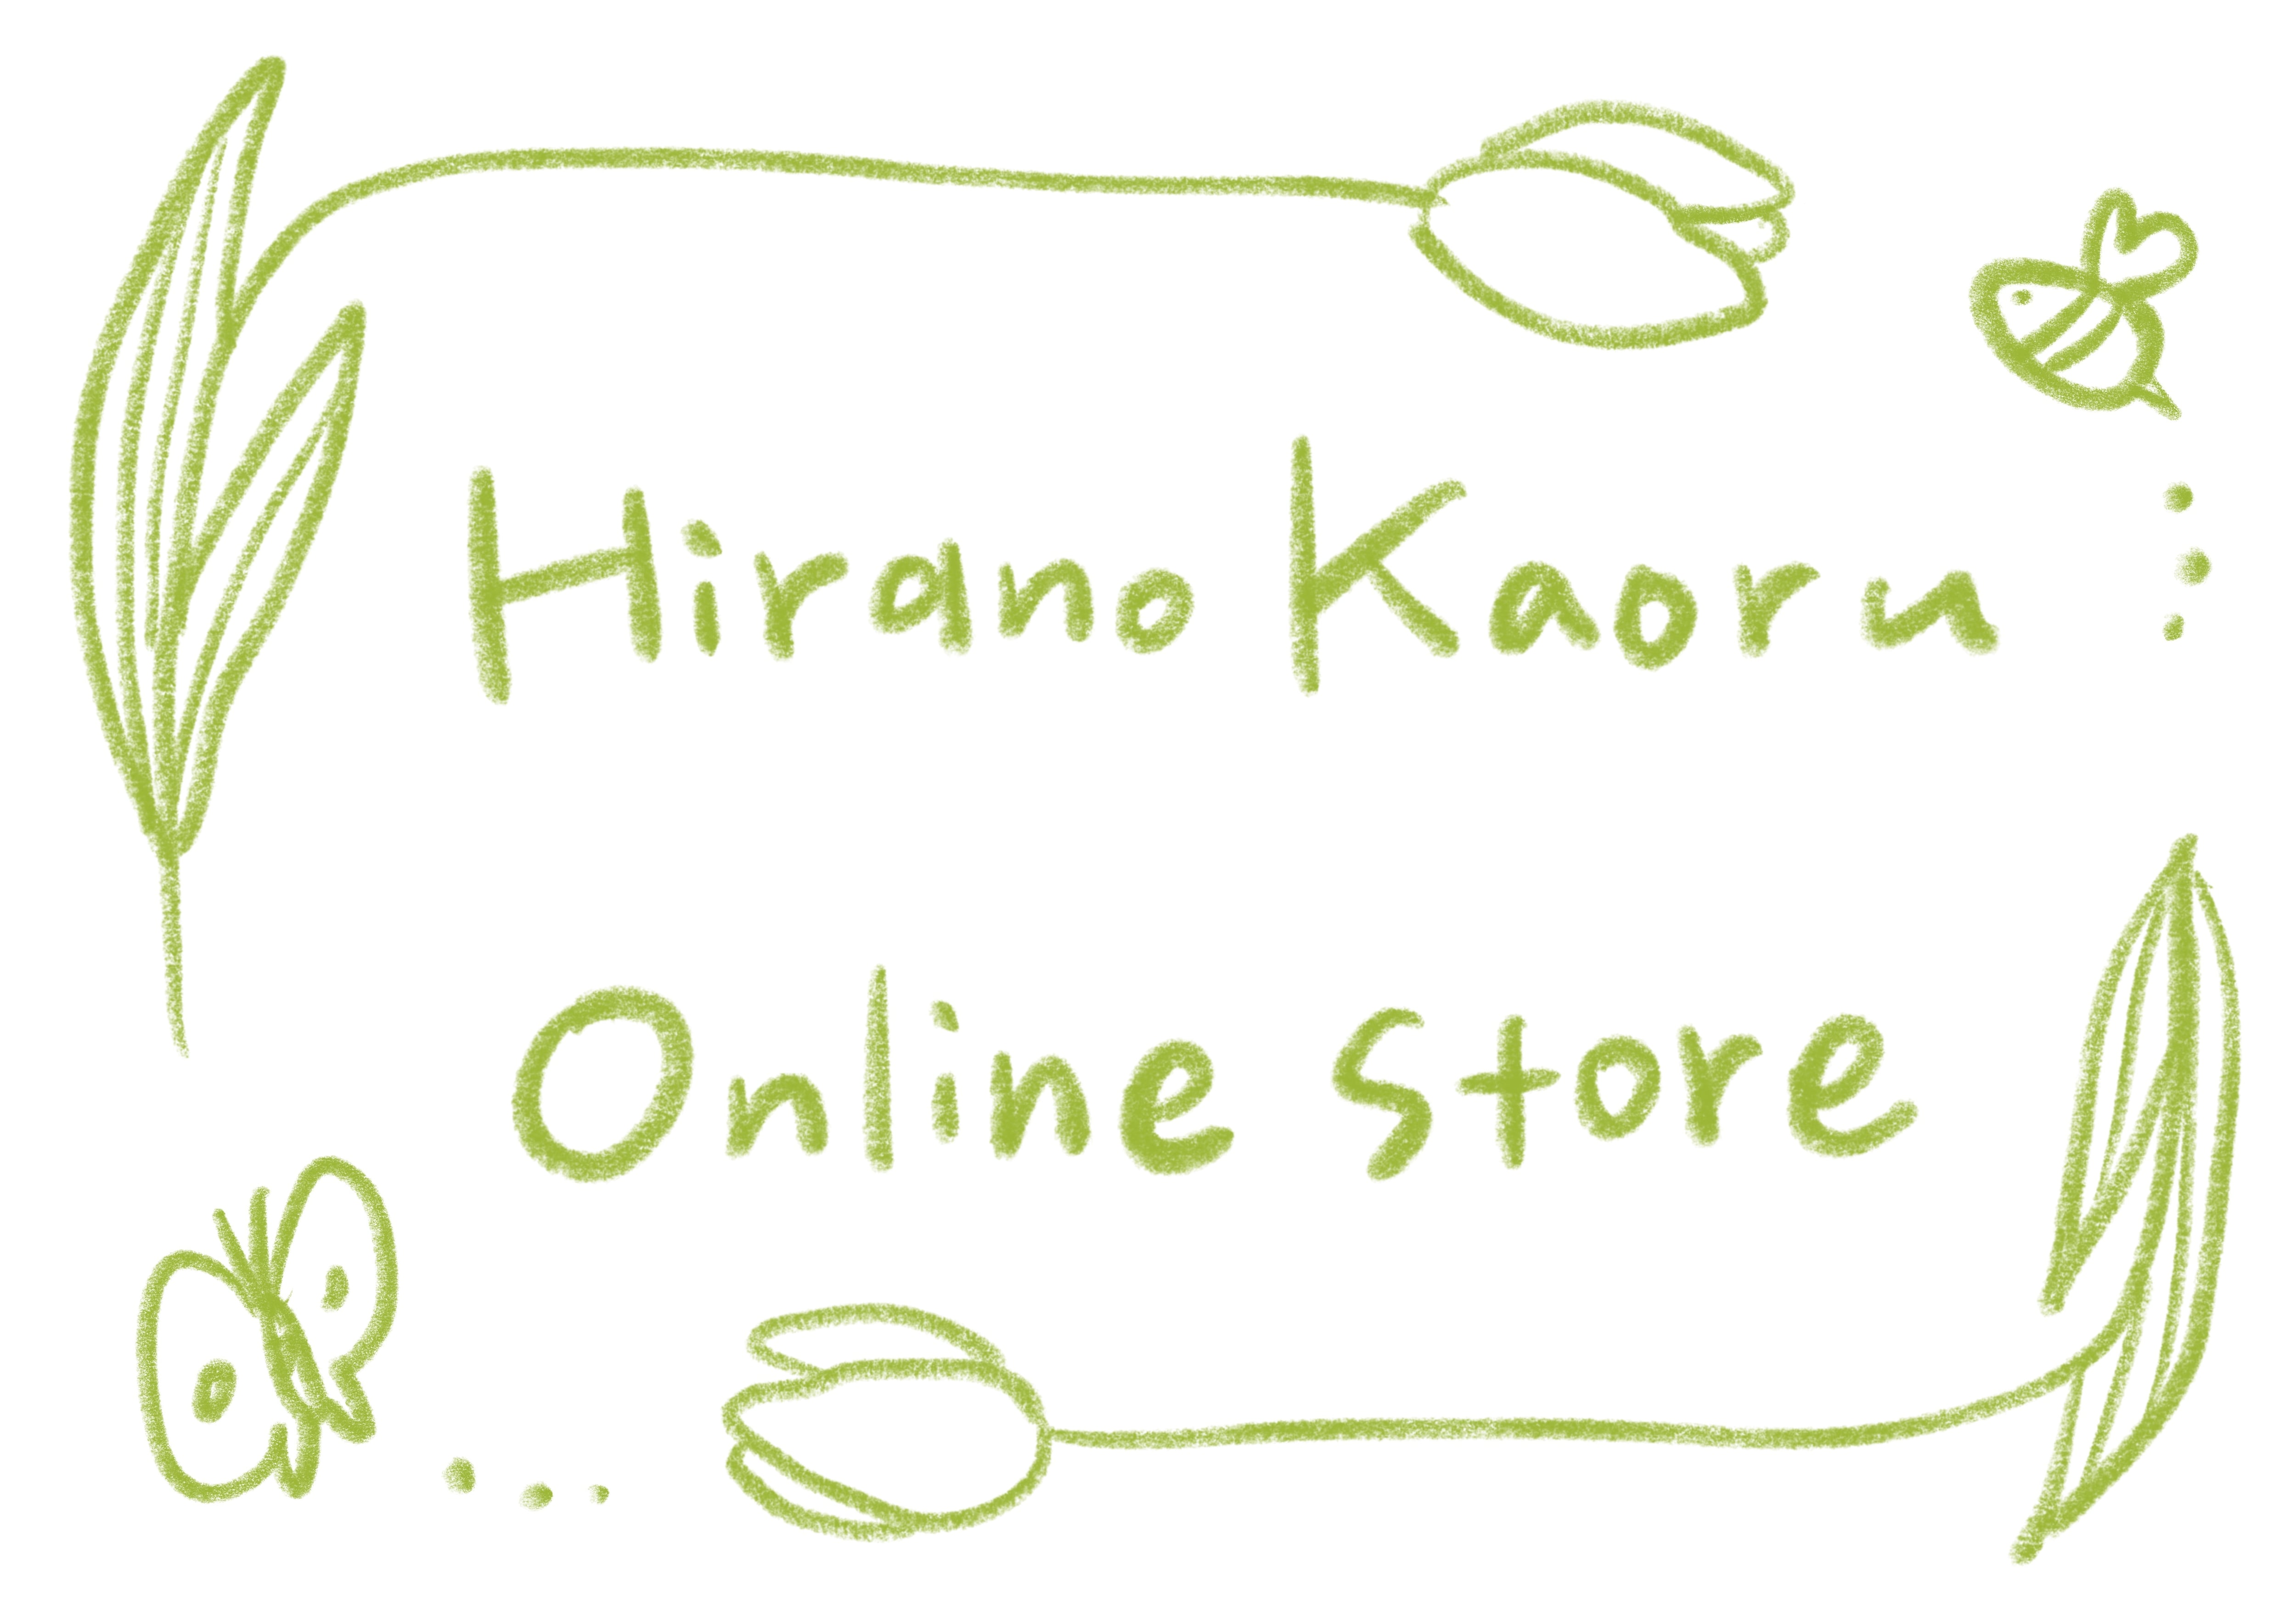 Hirano Kaoru